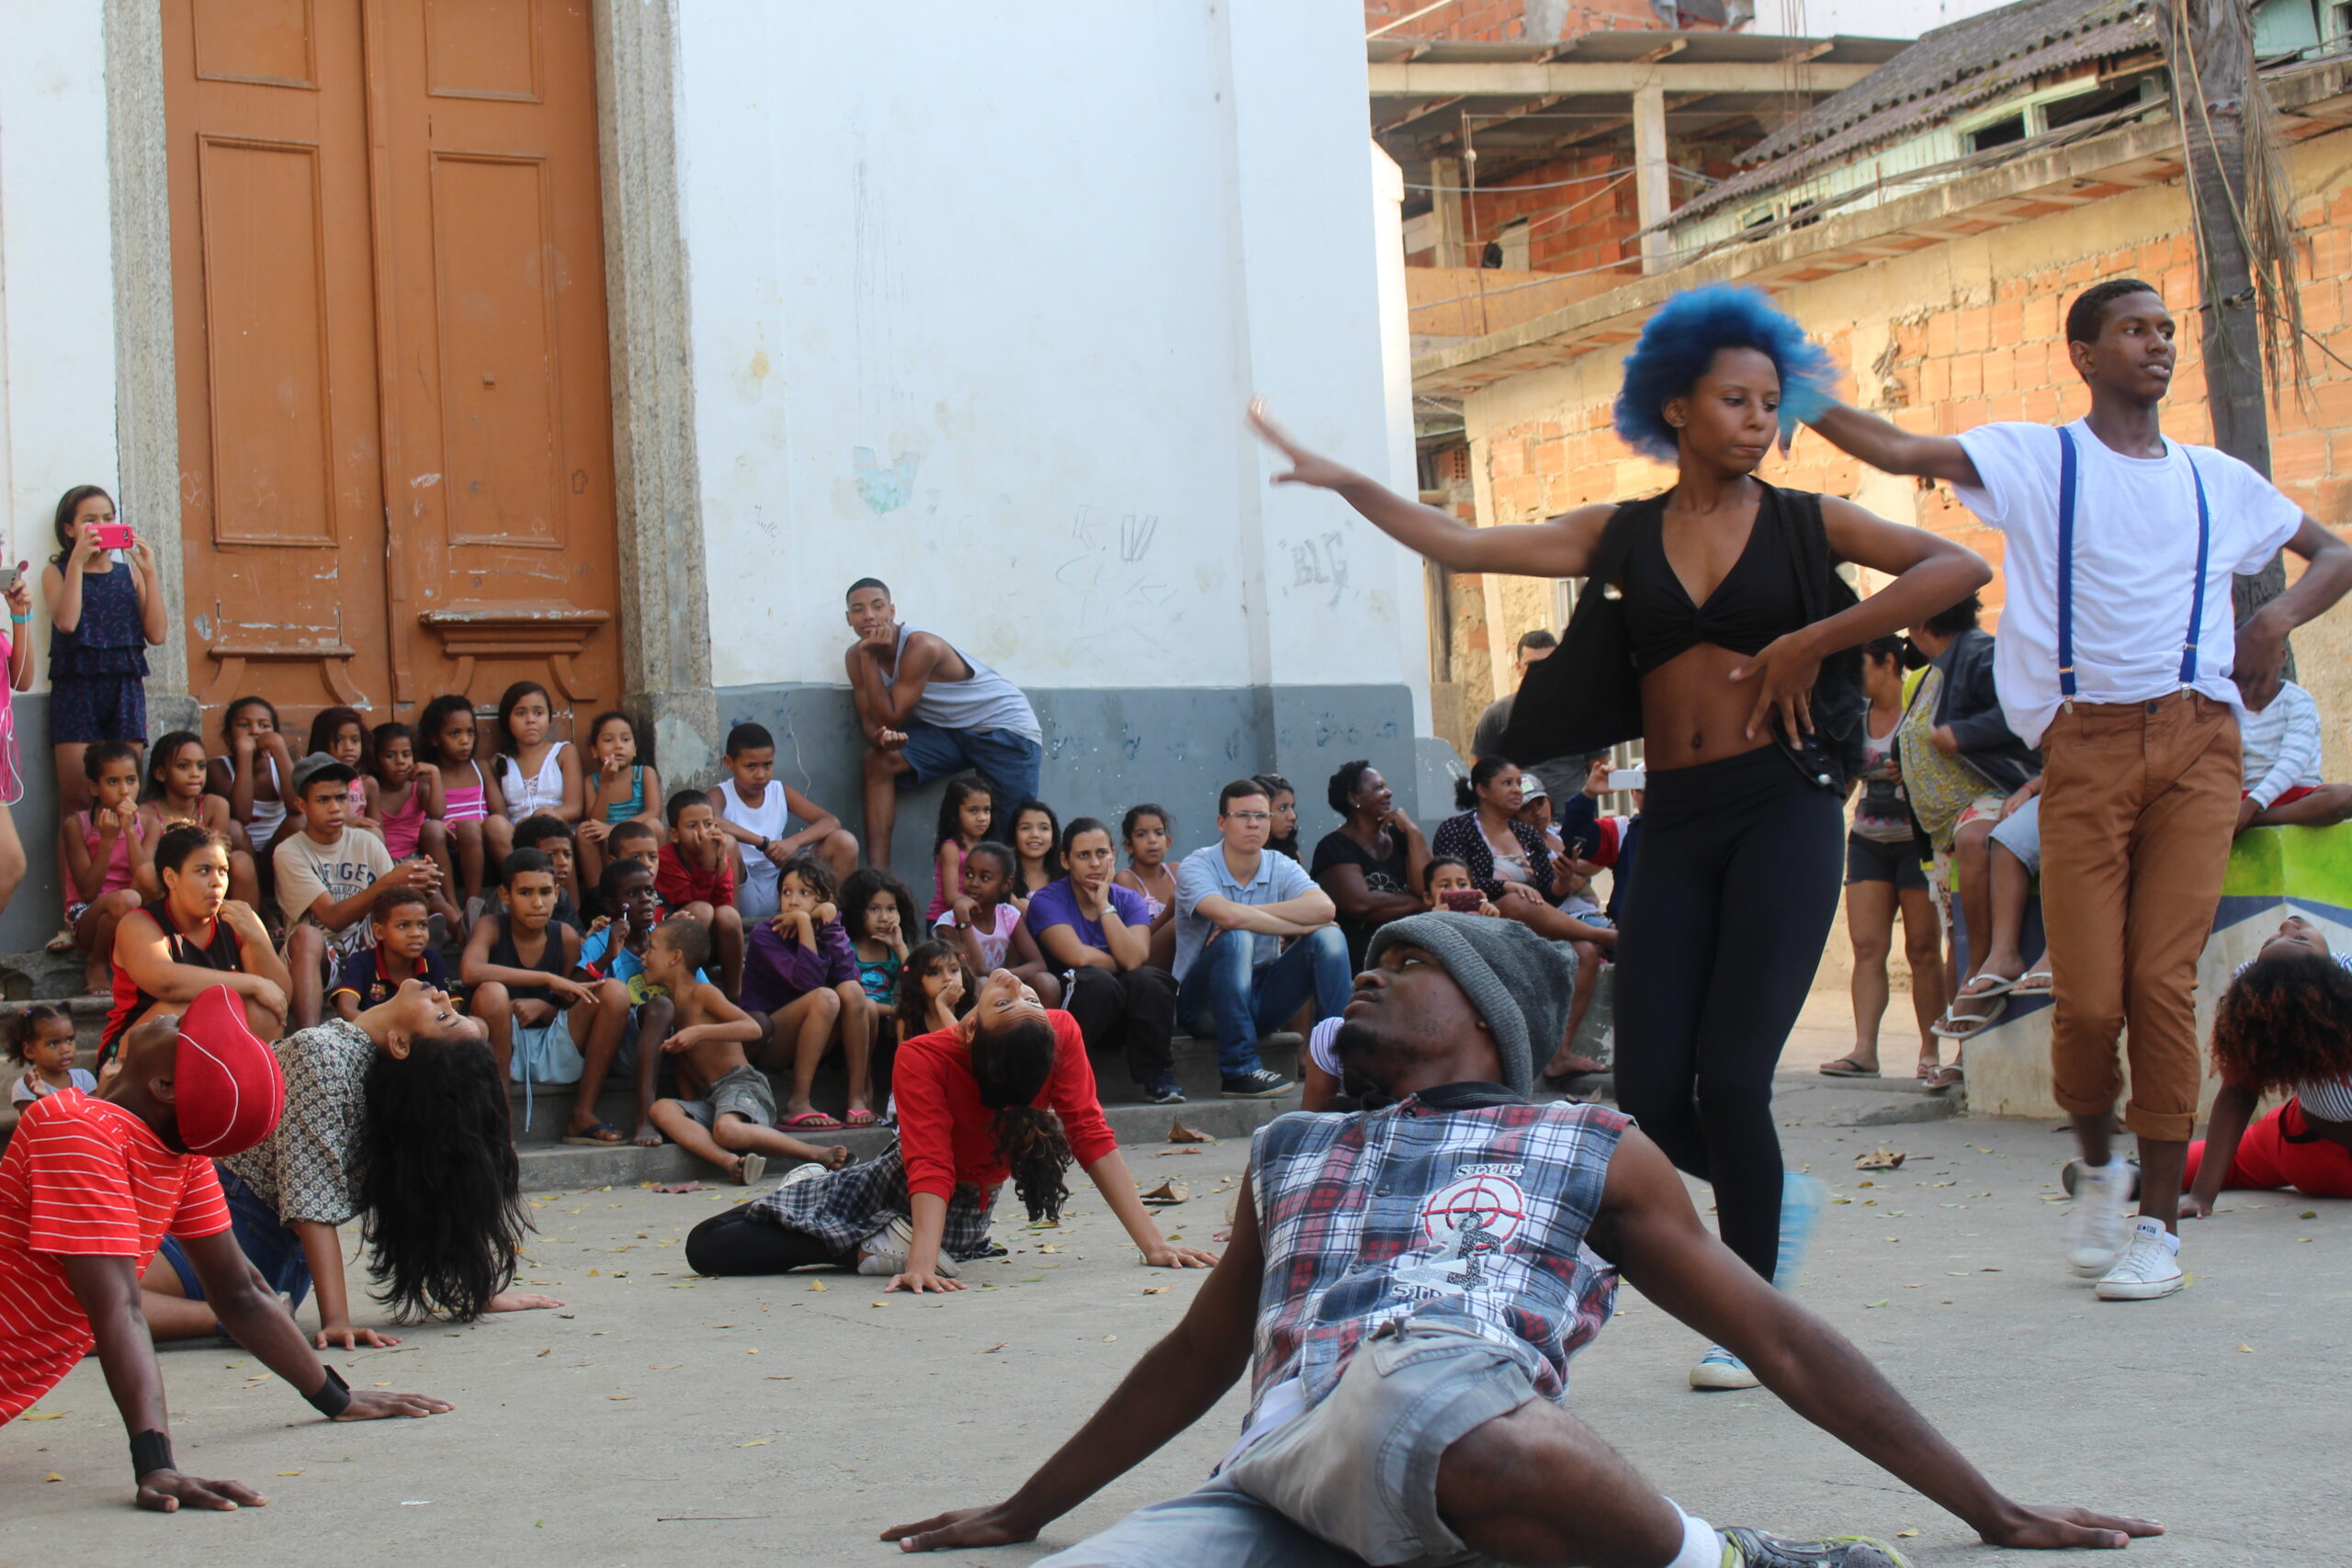 Society Rio-SP, Gente que acontece! Negócios, Lifestyle, Festas e Carnaval